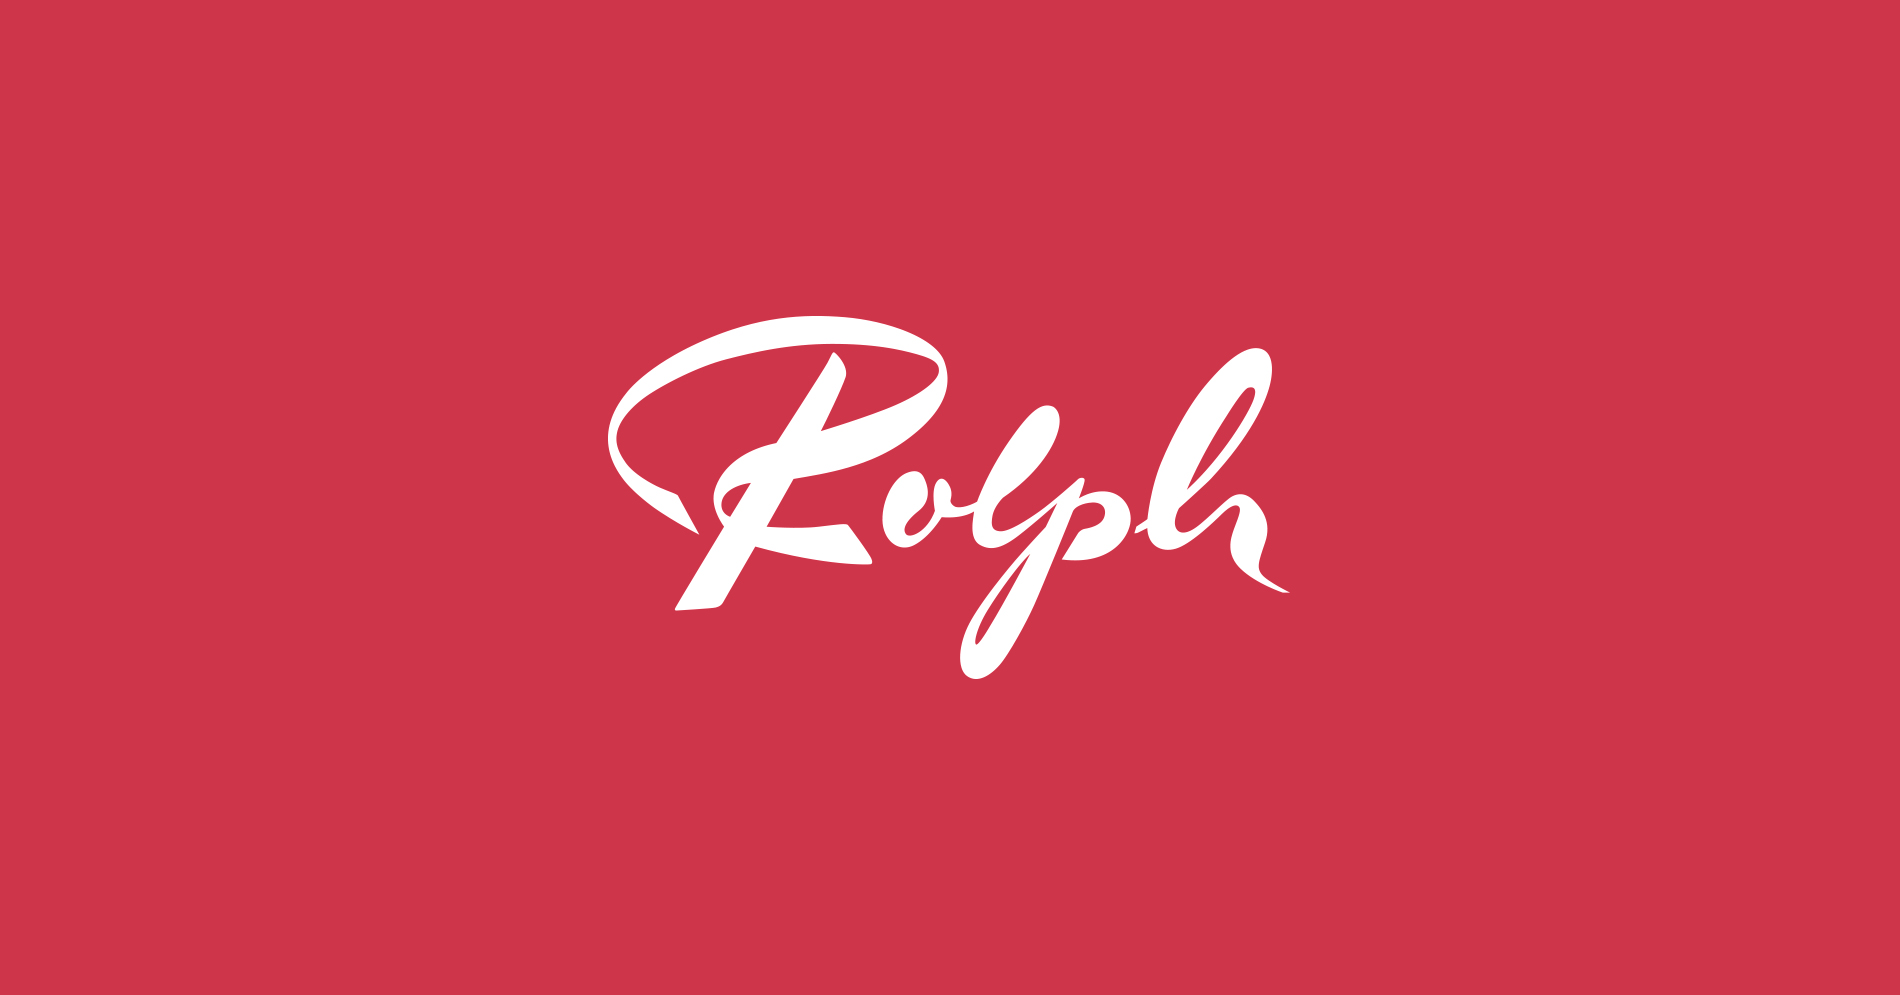 image-10406336-Rolph-AG_Branding_Corporate-Design_Logo_Branding-aab32.jpg